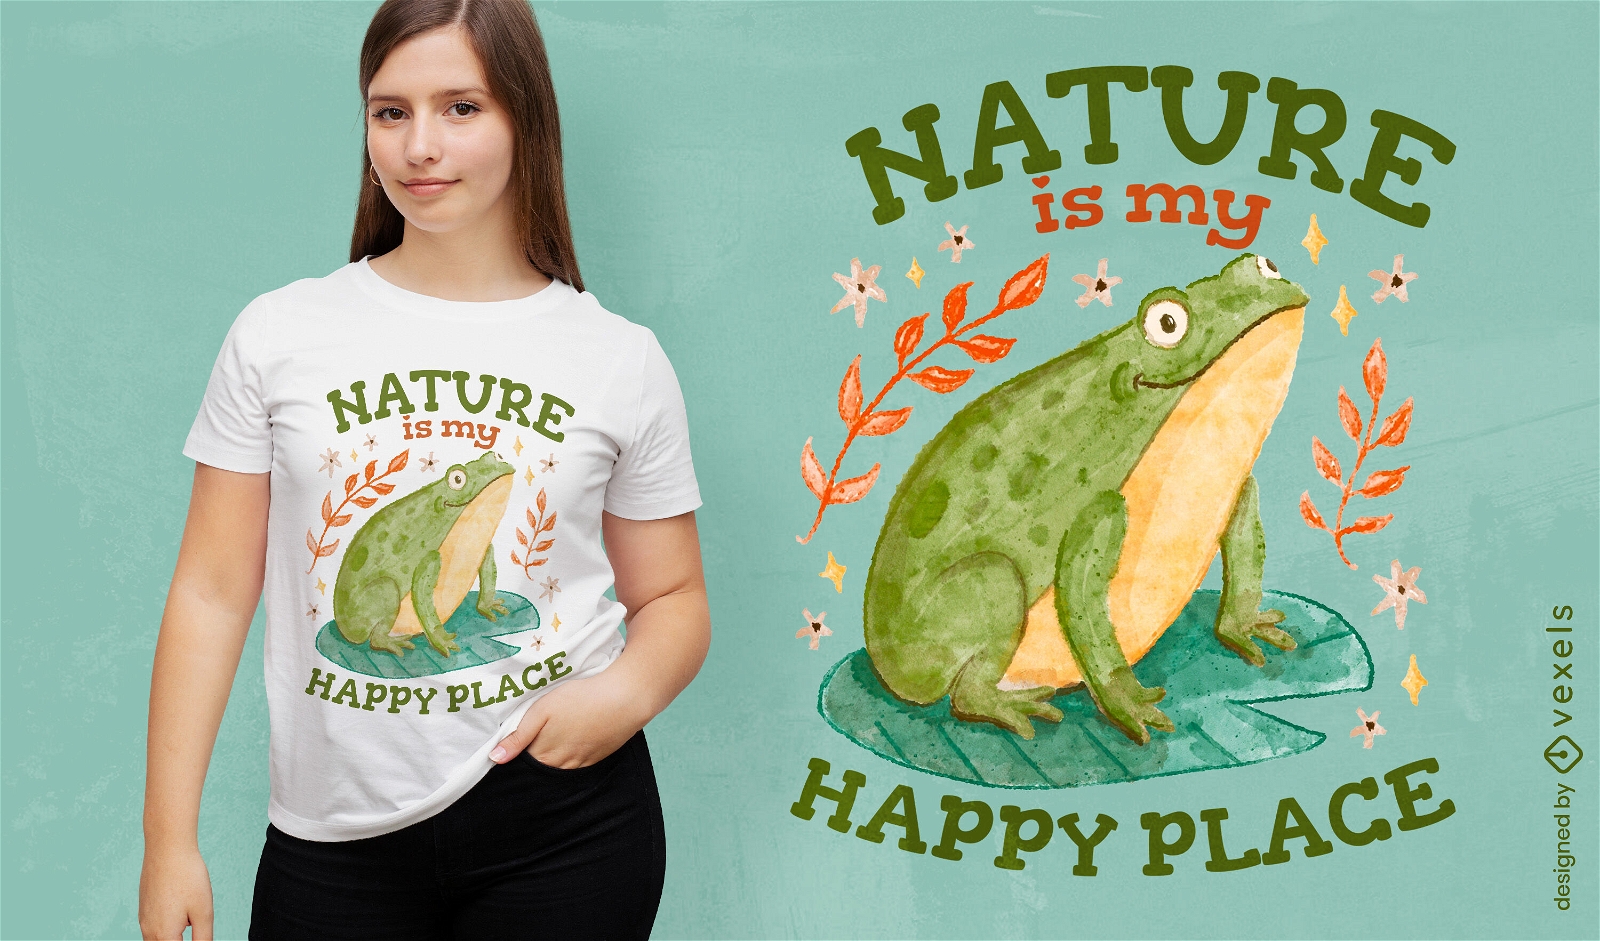 Diseño de camiseta del santuario natural de la rana verde.